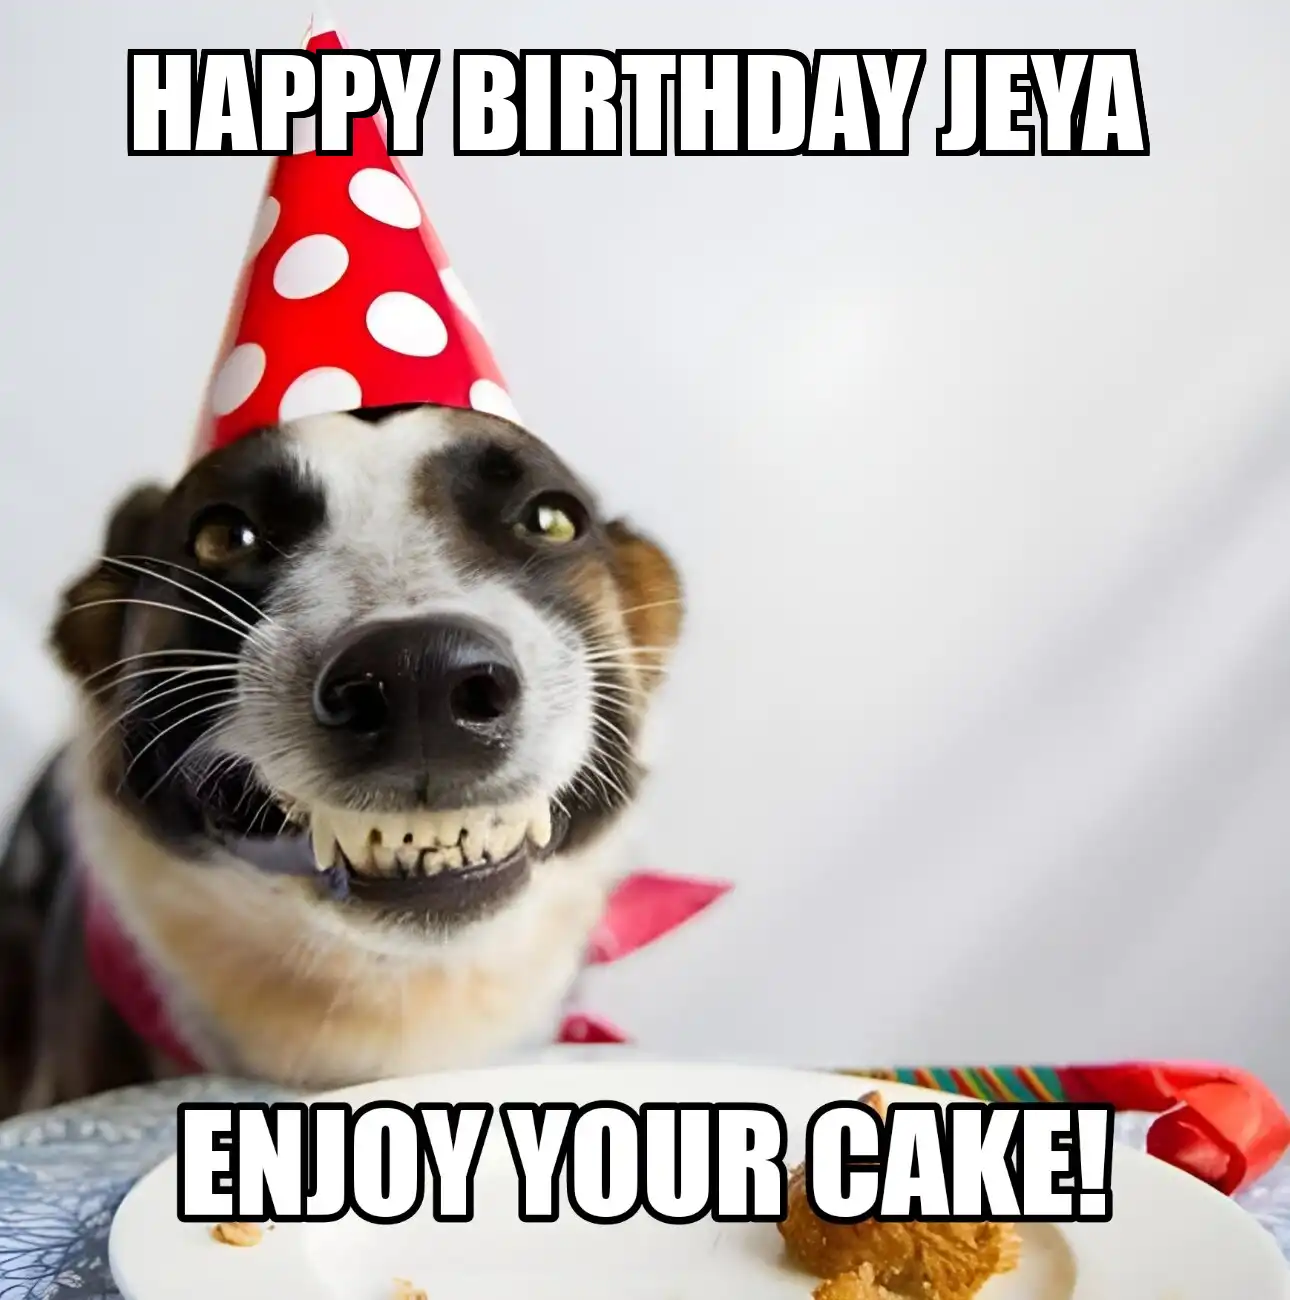 Happy Birthday Jeya Enjoy Your Cake Dog Meme